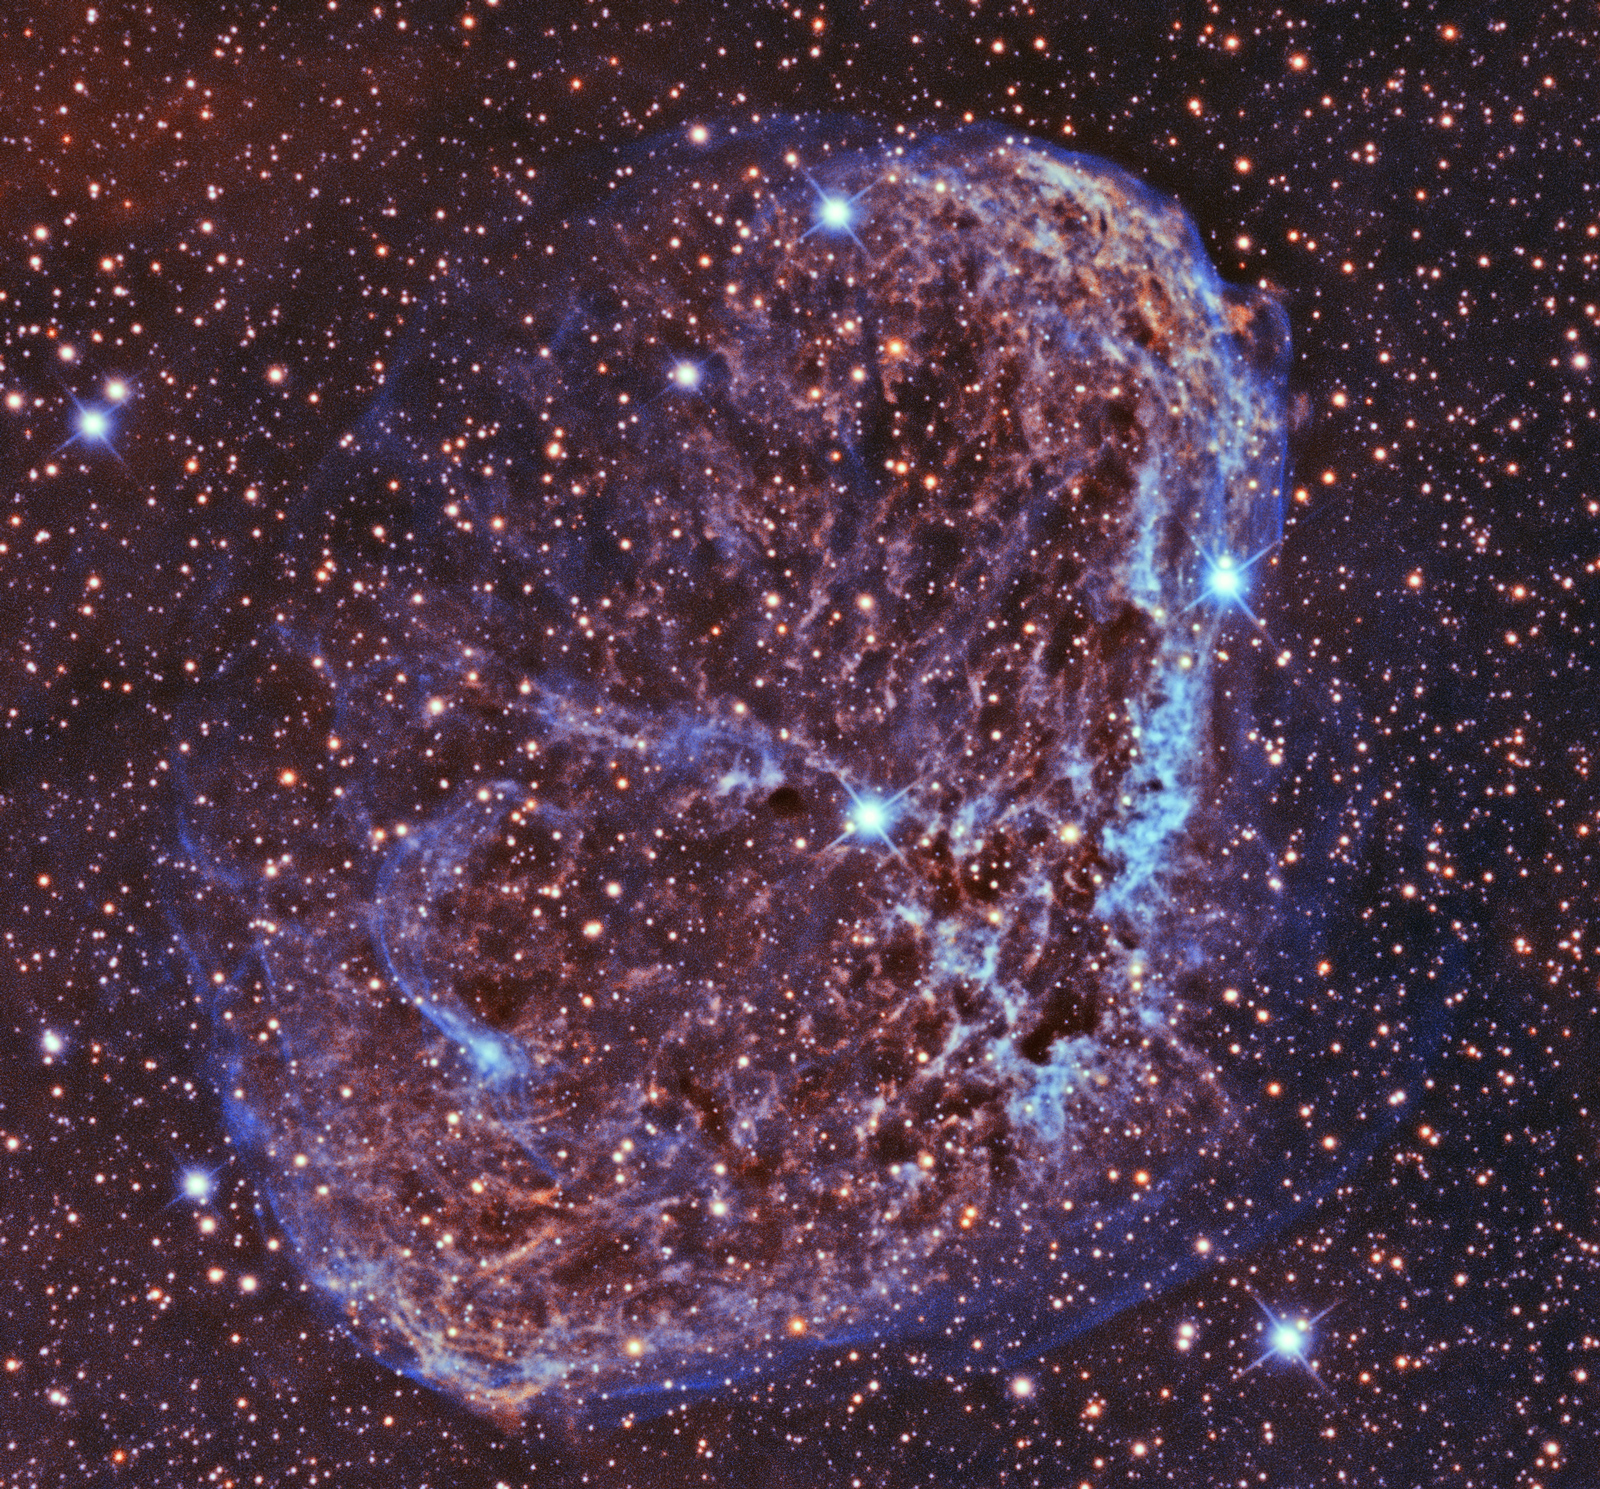 NGC 6888 The Cresent Nebula